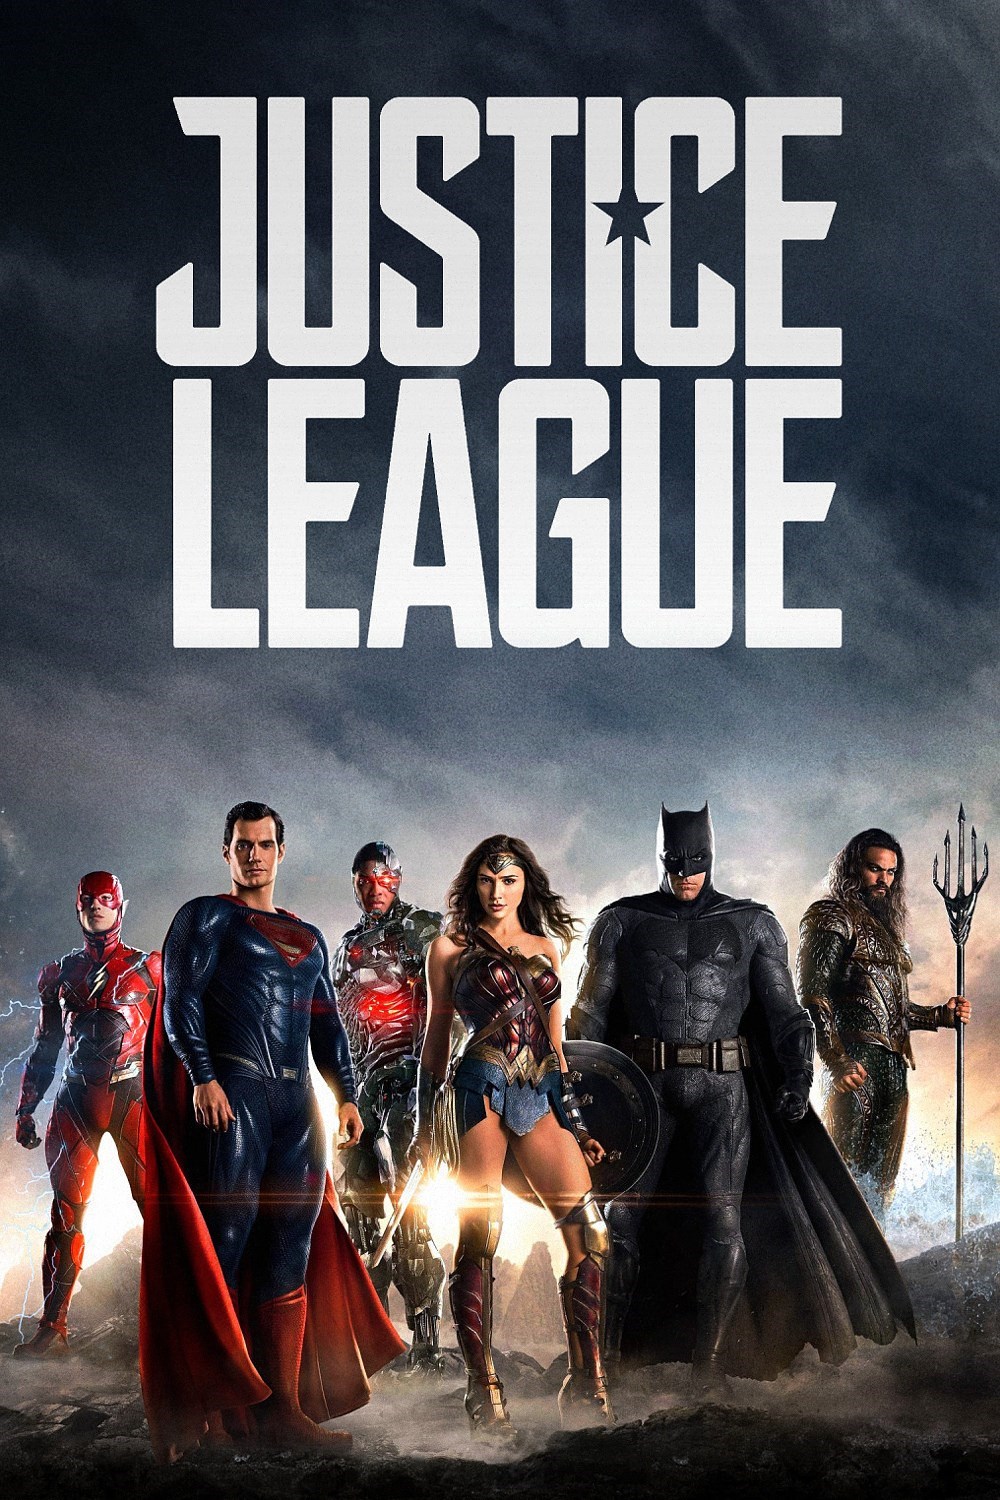 Justice League Part 1 Movie Trailer 2017 Subtitle 